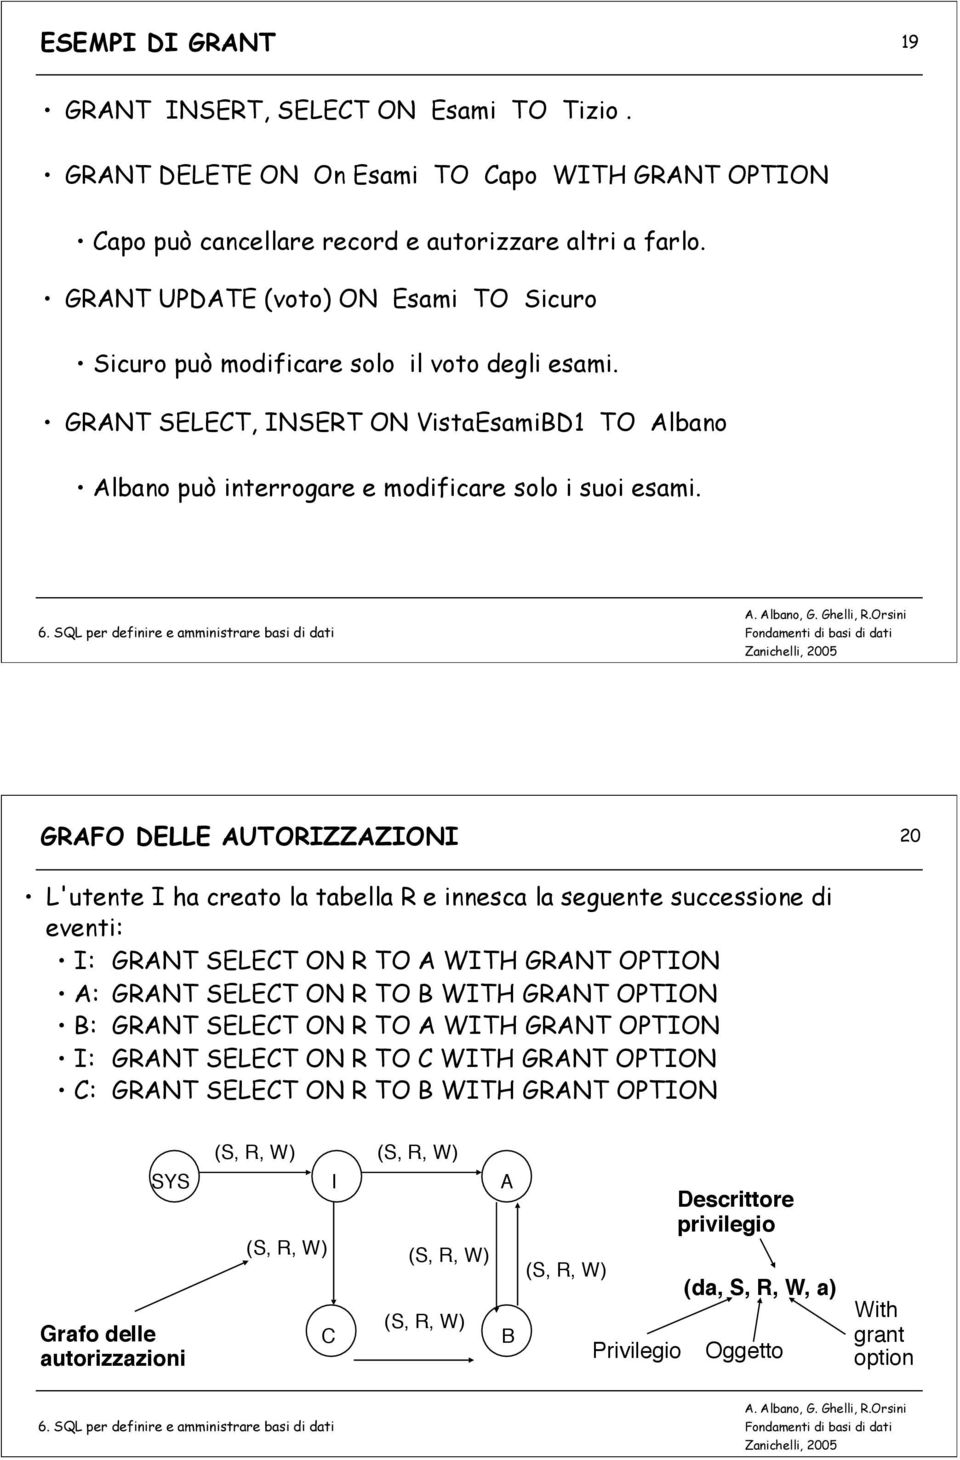 GRAFO DELLE AUTORIZZAZIONI 20 L'utente I ha creato la tabella R e innesca la seguente successione di eventi: I: GRANT SELECT ON R TO A WITH GRANT OPTION A: GRANT SELECT ON R TO B WITH GRANT OPTION B: